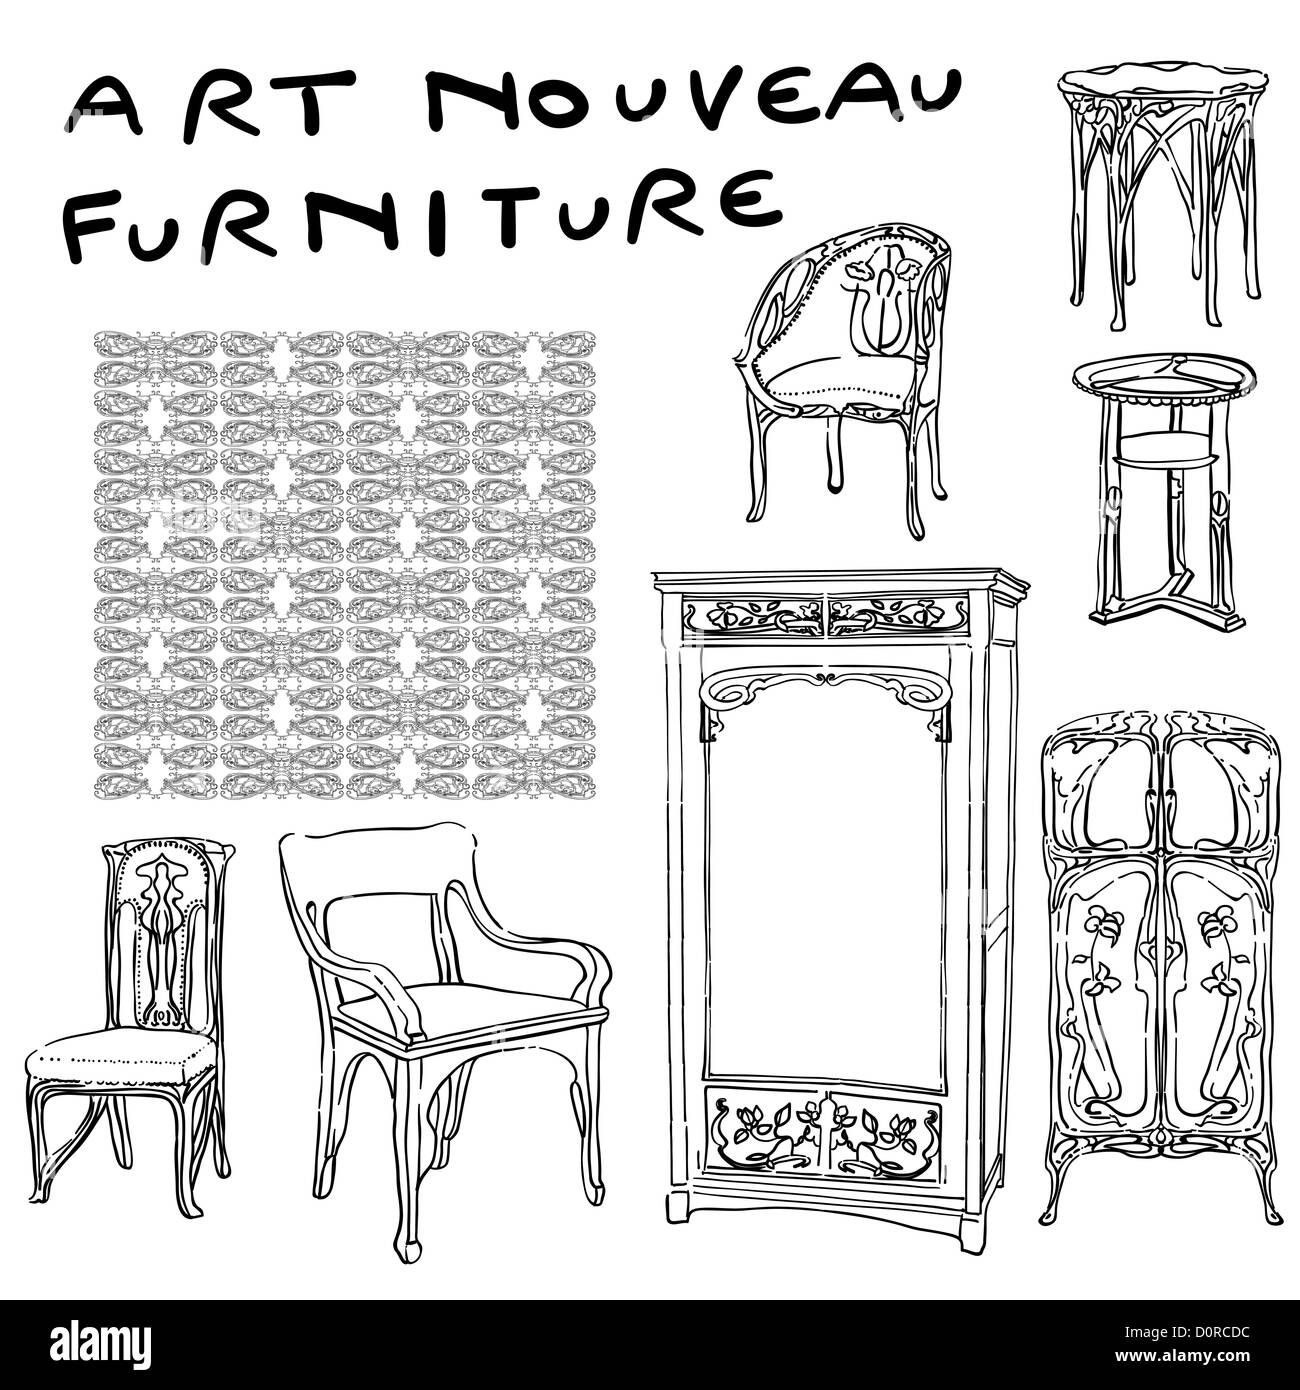 jugendstil furniture doodles Stock Photo